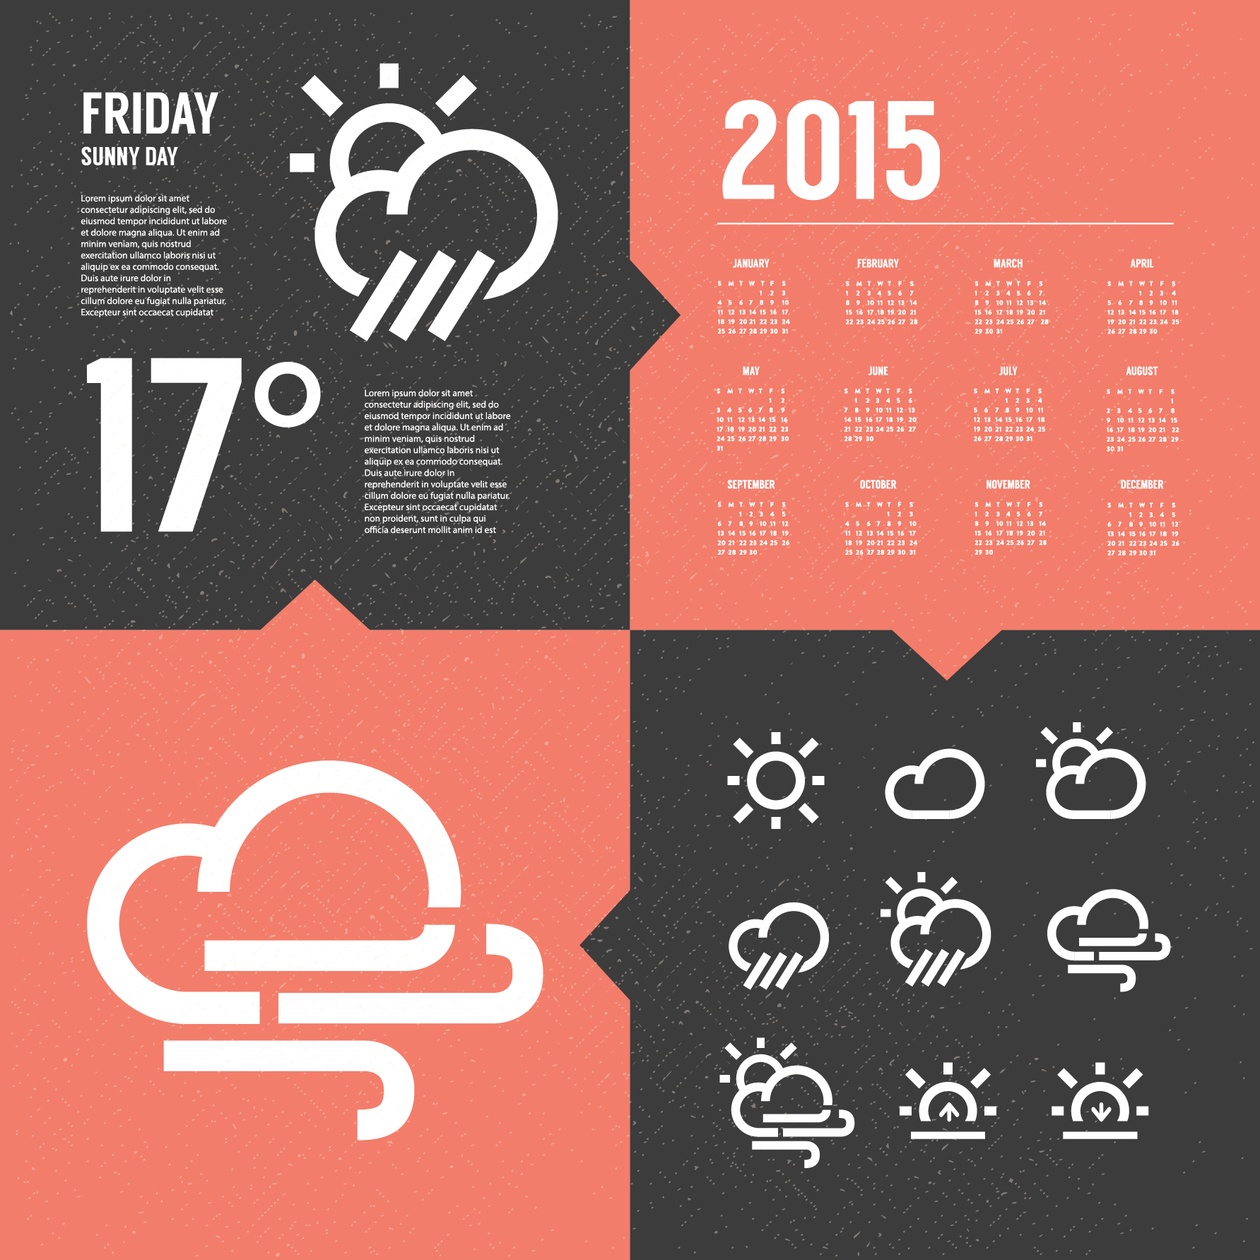 Weather Background with Icon set Photoshop brush